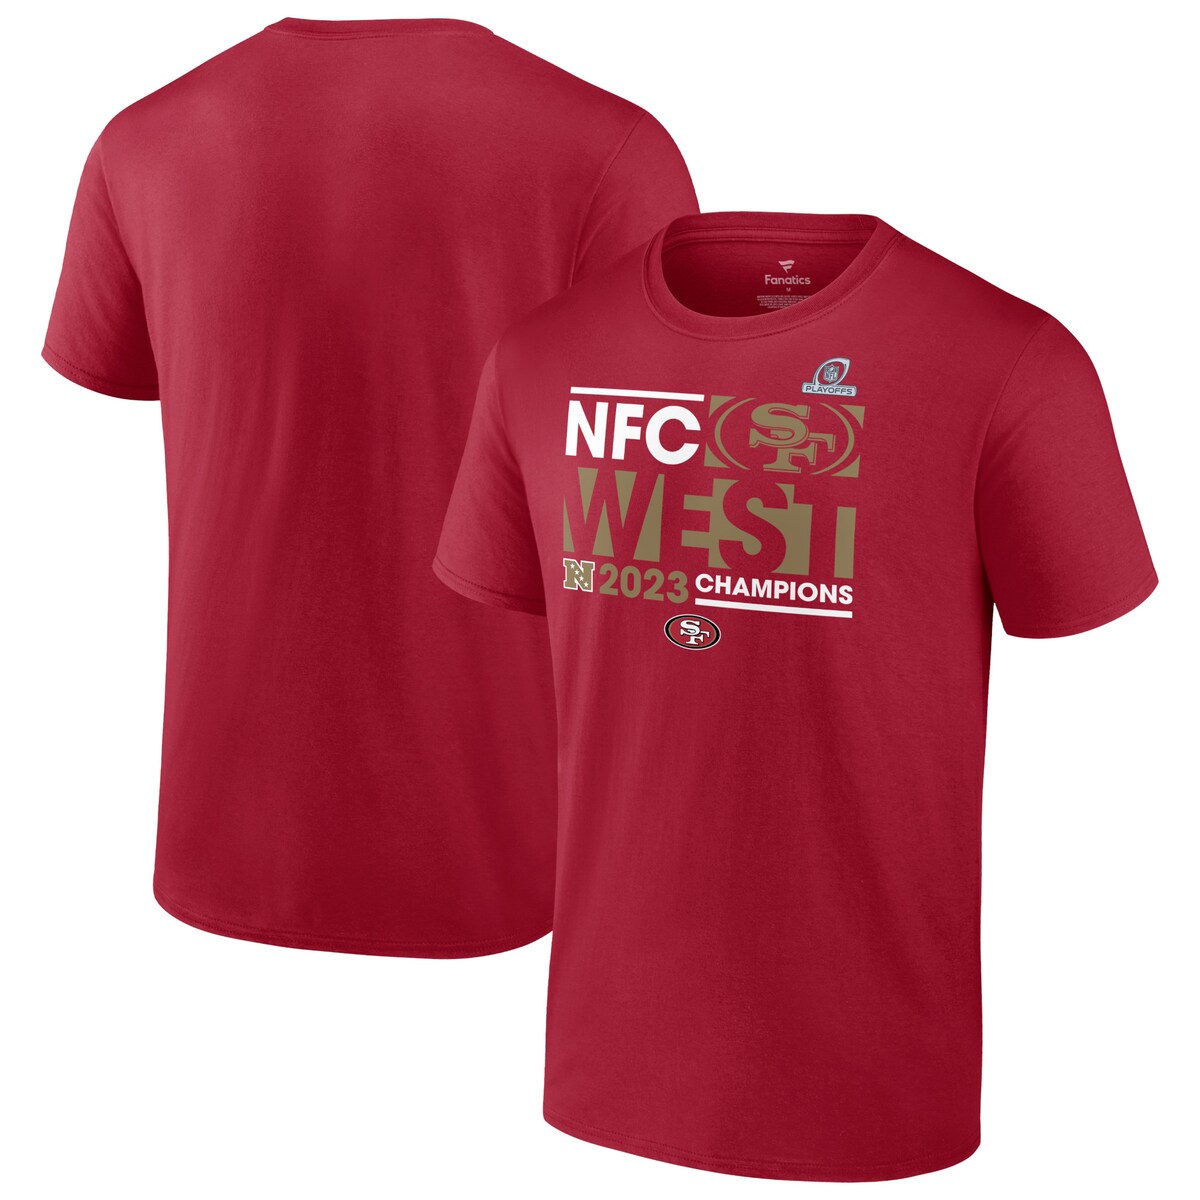 NFL 49ers Tシャツ Fanatics